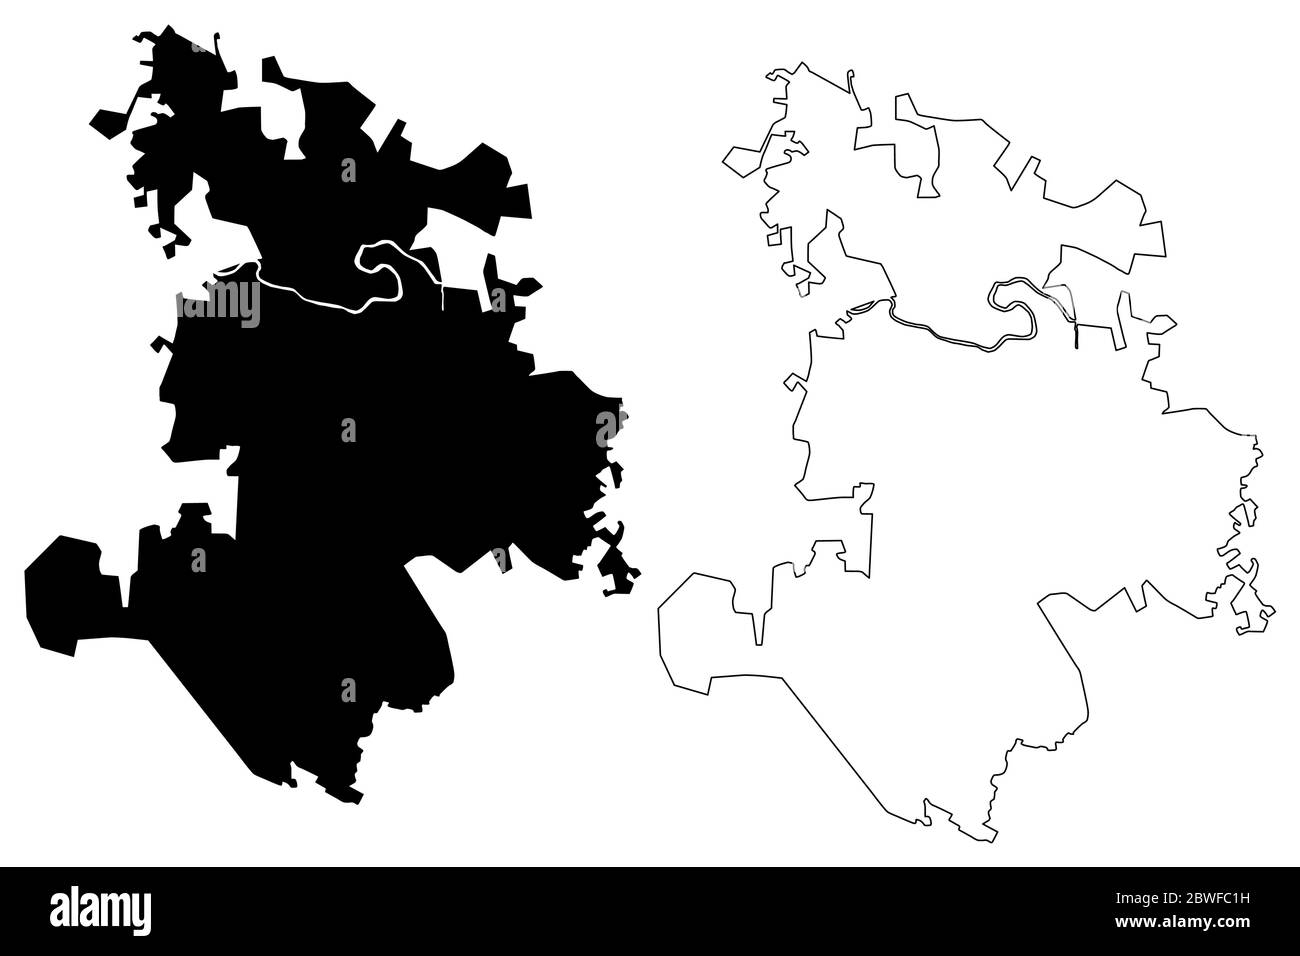 Pekanbaru City (Republic of Indonesia, Sumatra island) map vector illustration, scribble sketch City of Pekanbaru map Stock Vector